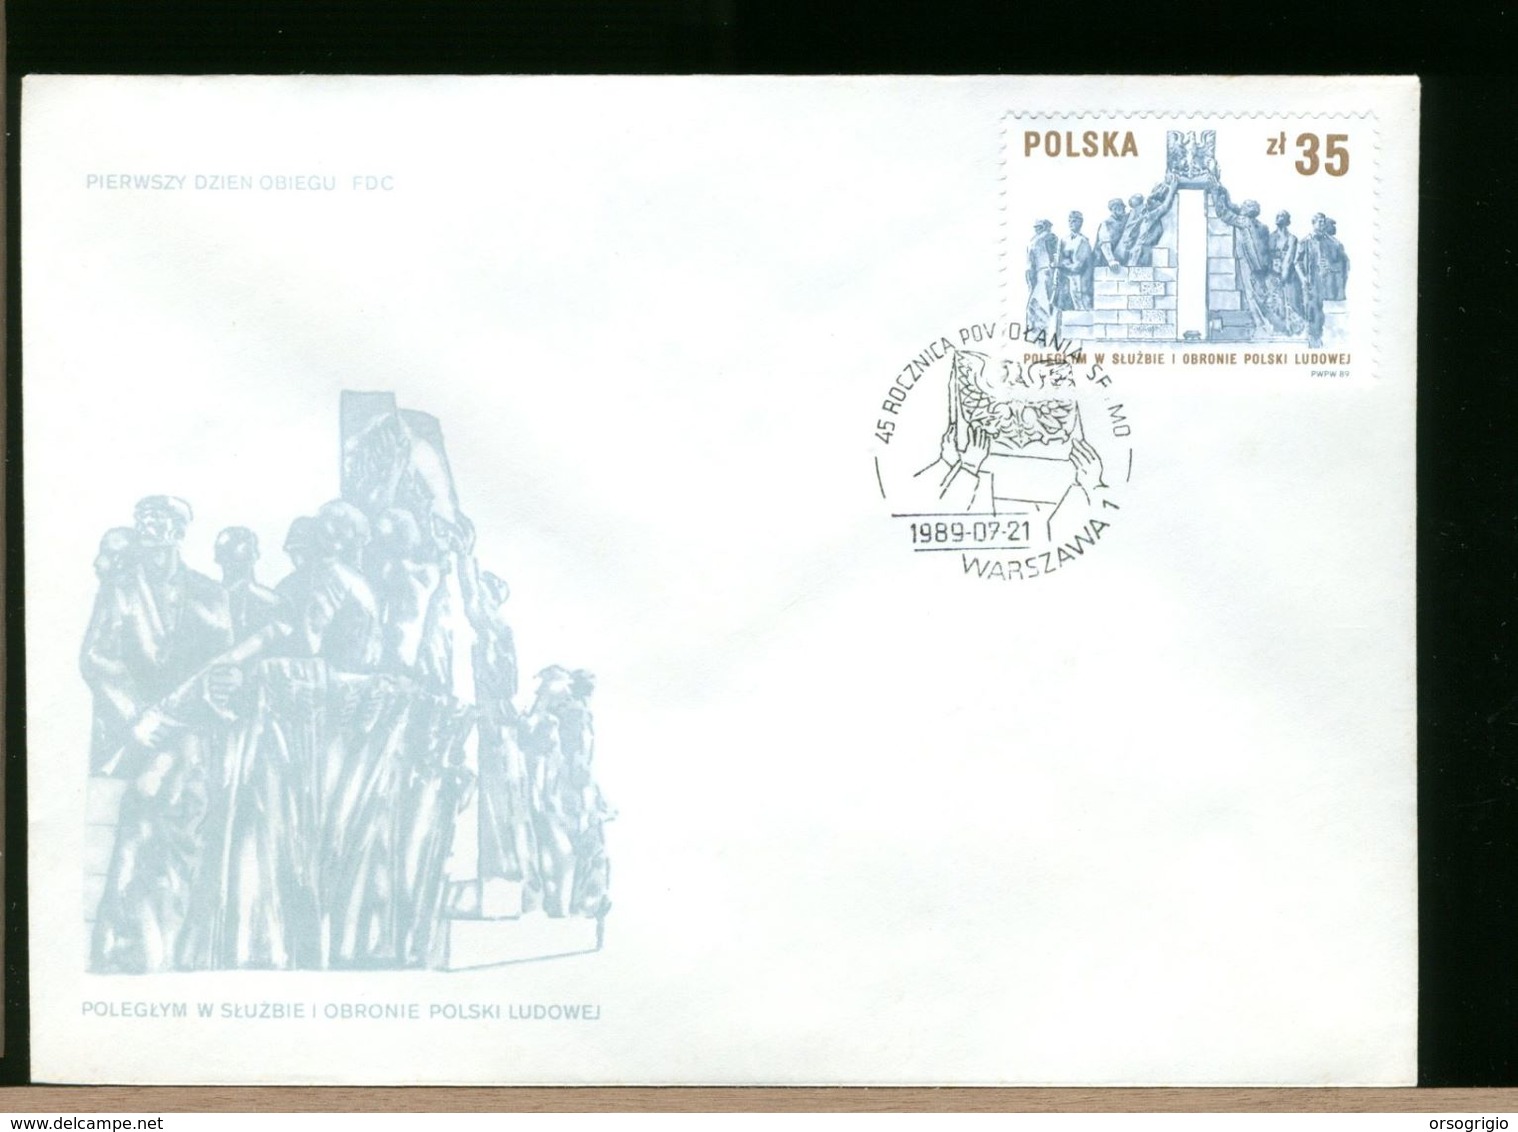 POLSKA - FDC - 1989 - MONUMENTO STATUA - FDC